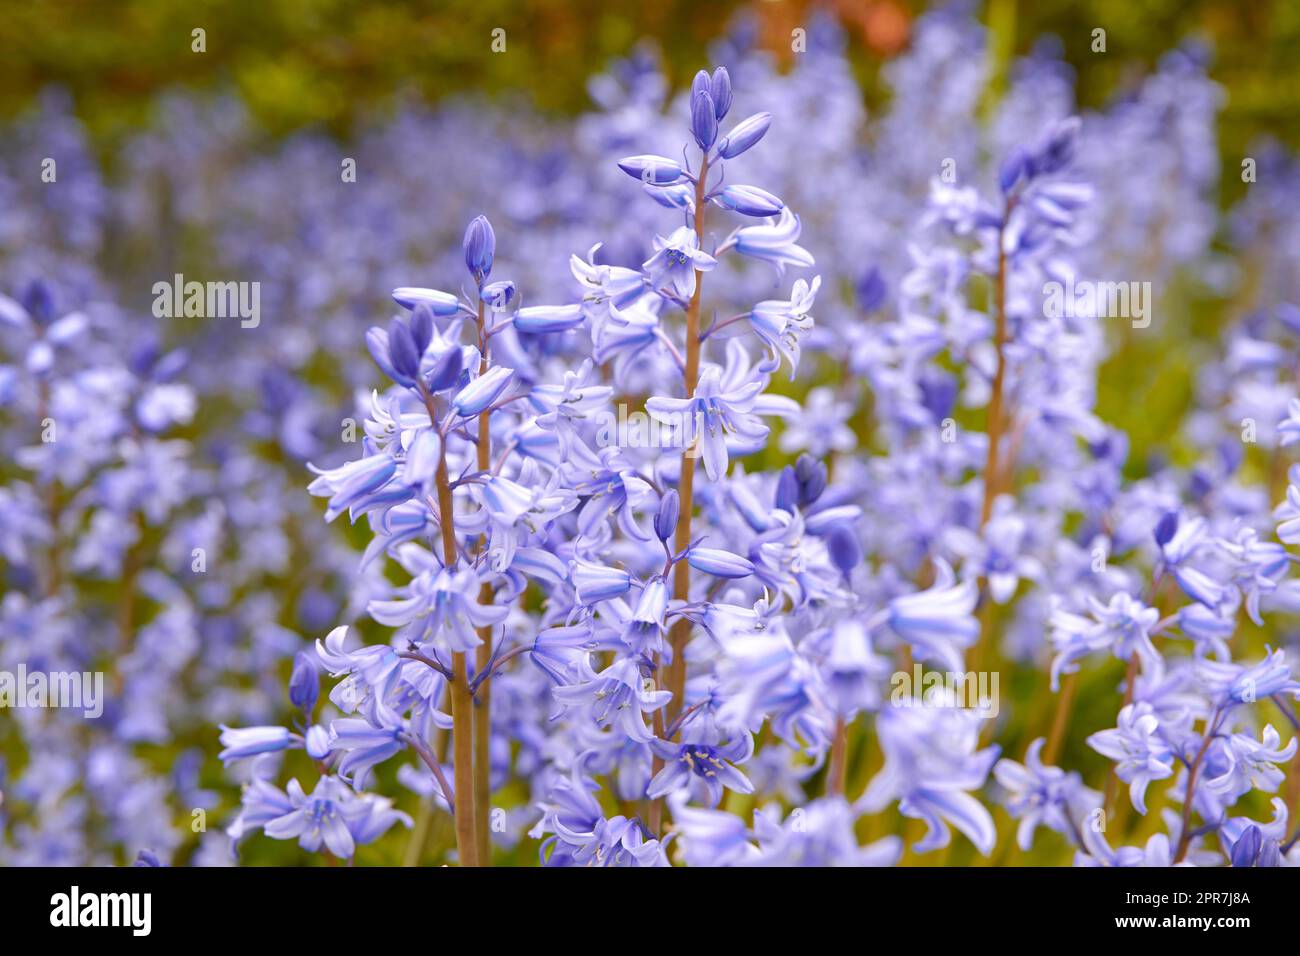 Im Frühling auf einer Wiese mit lebendigen Blumen. Atemberaubende violette Blüten von Blauen Glocken oder Hyazinthen in einem wilden, verschwommenen Feld. Nahaufnahme einer farbenfrohen Naturszene in einem Garten oder auf dem Land Stockfoto